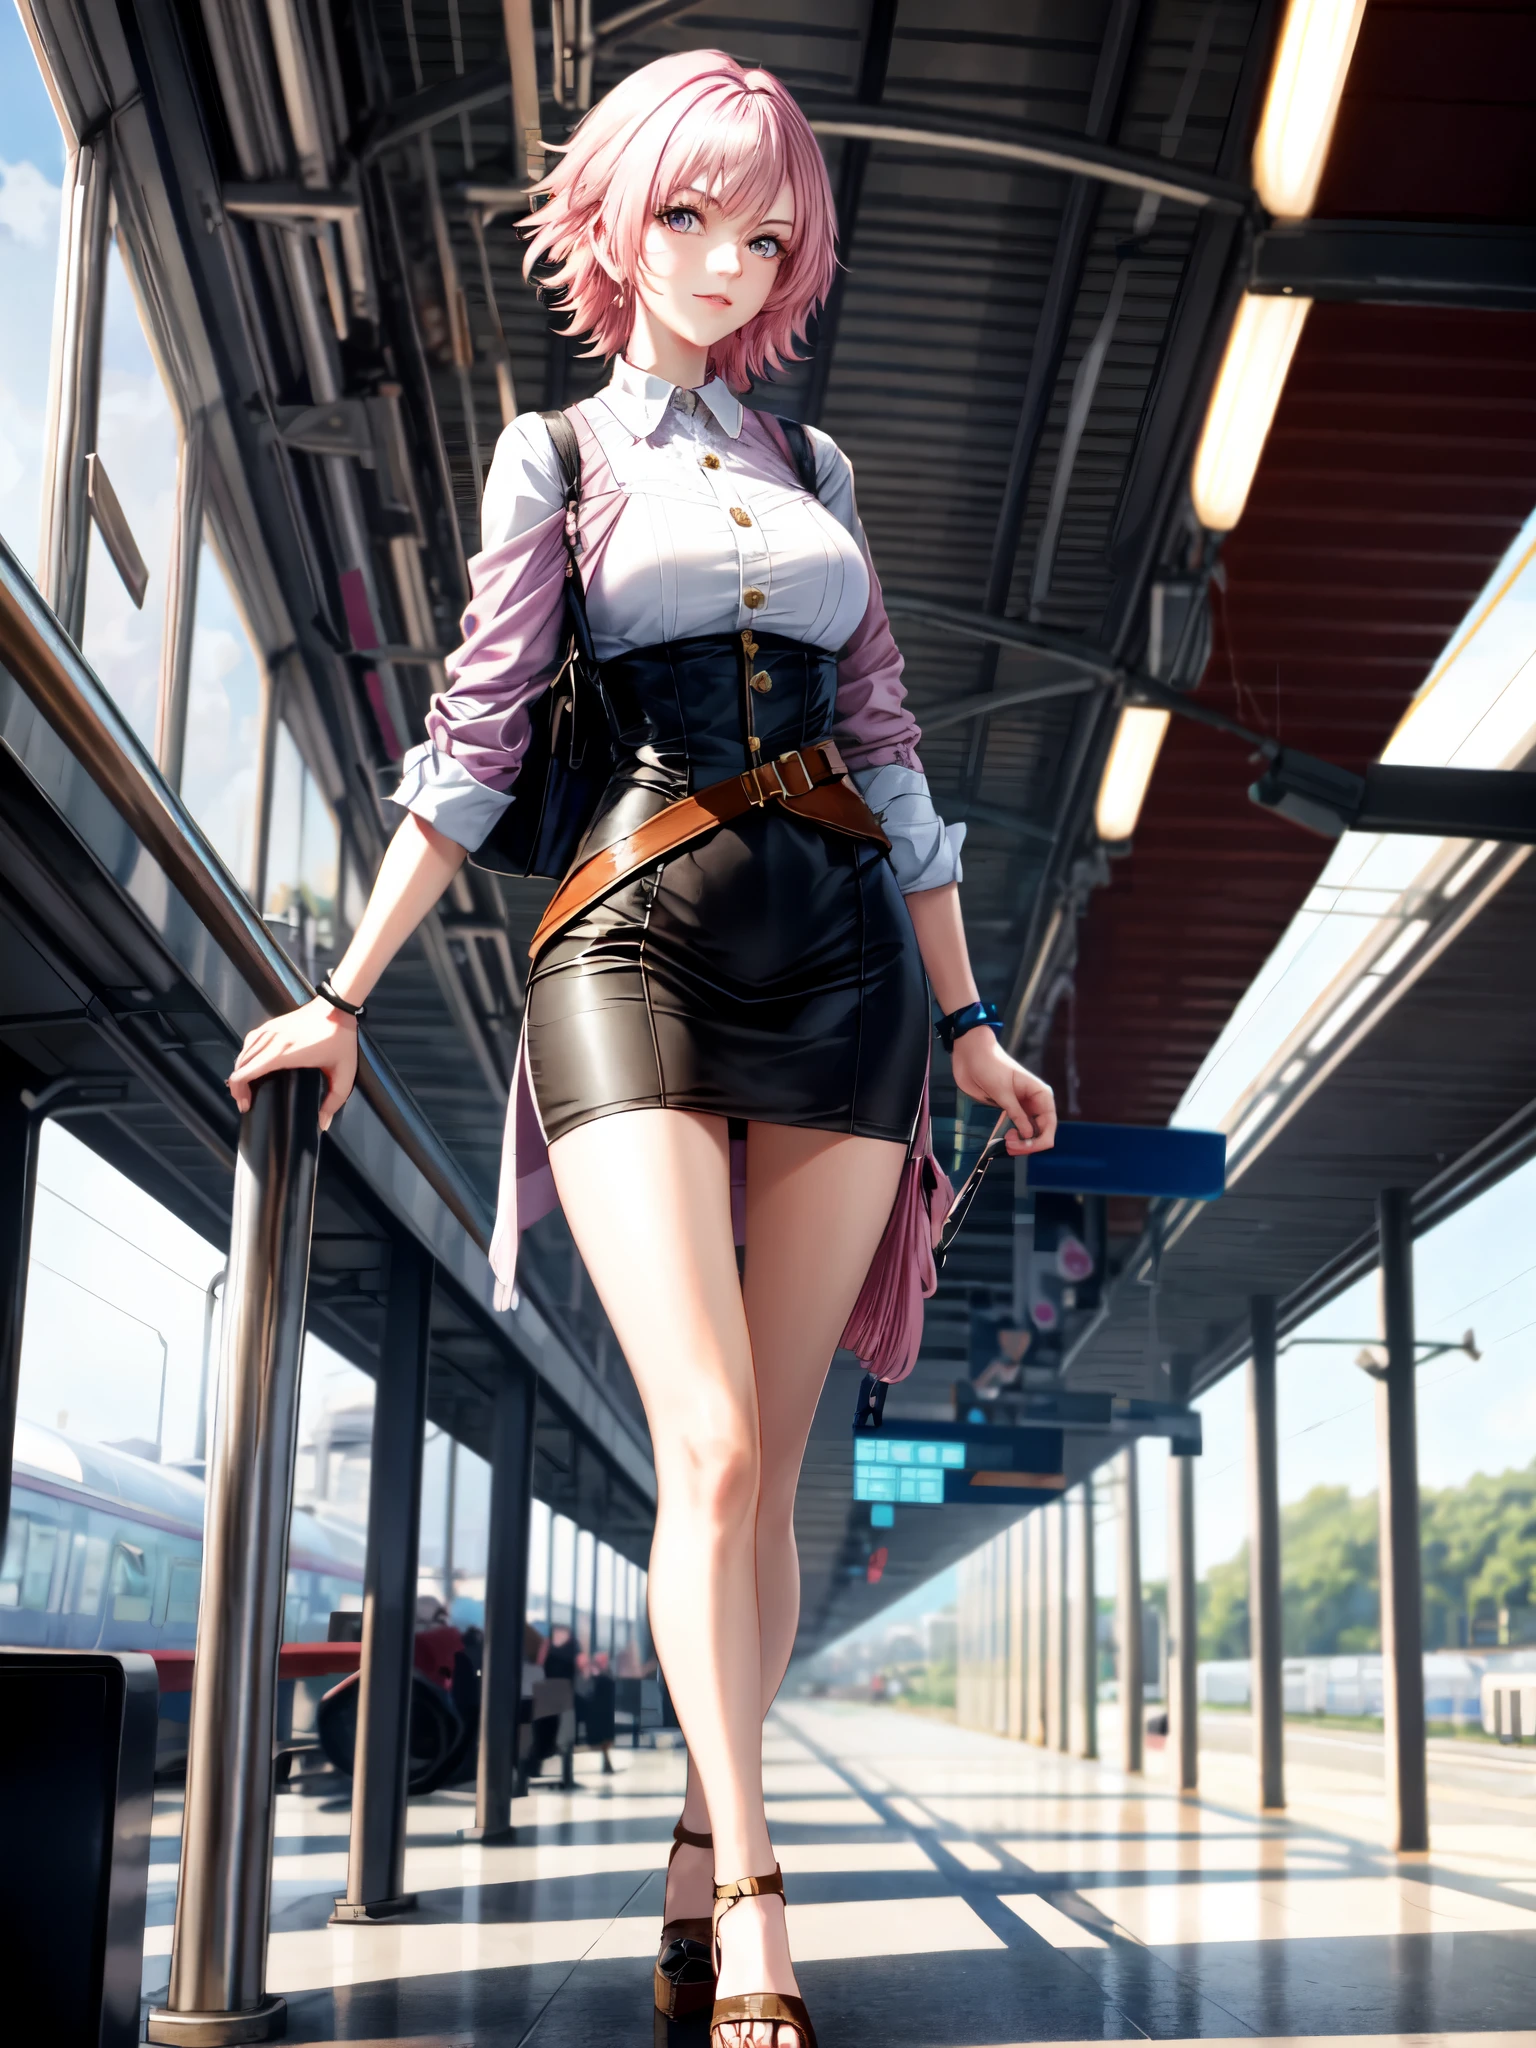 หญิงร่างสูงสวยผมสั้นสีชมพูในสถานีรถไฟ